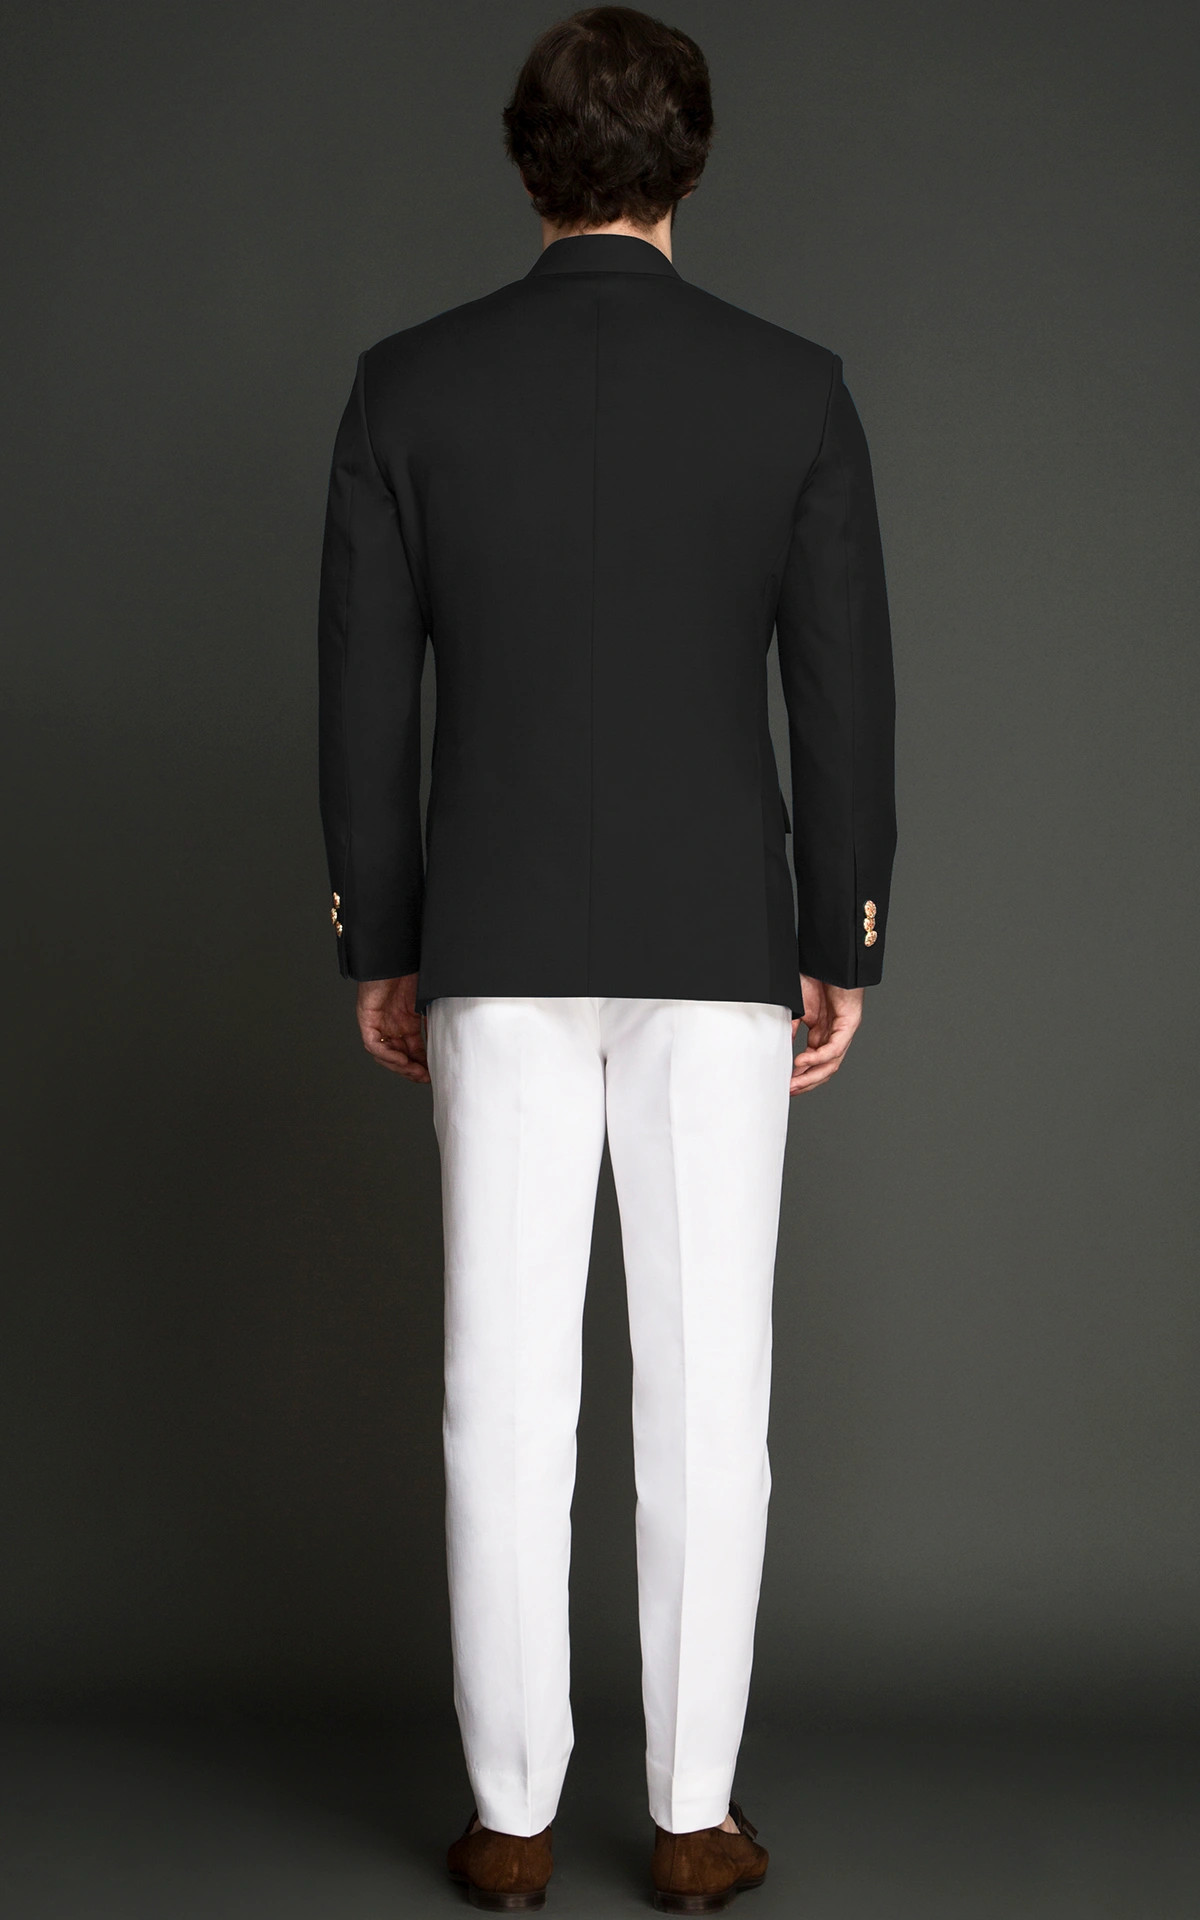 Men Designer Black Jodhpuri Suit Groomsmen Wedding Evening Jacket Coat Pants  | eBay